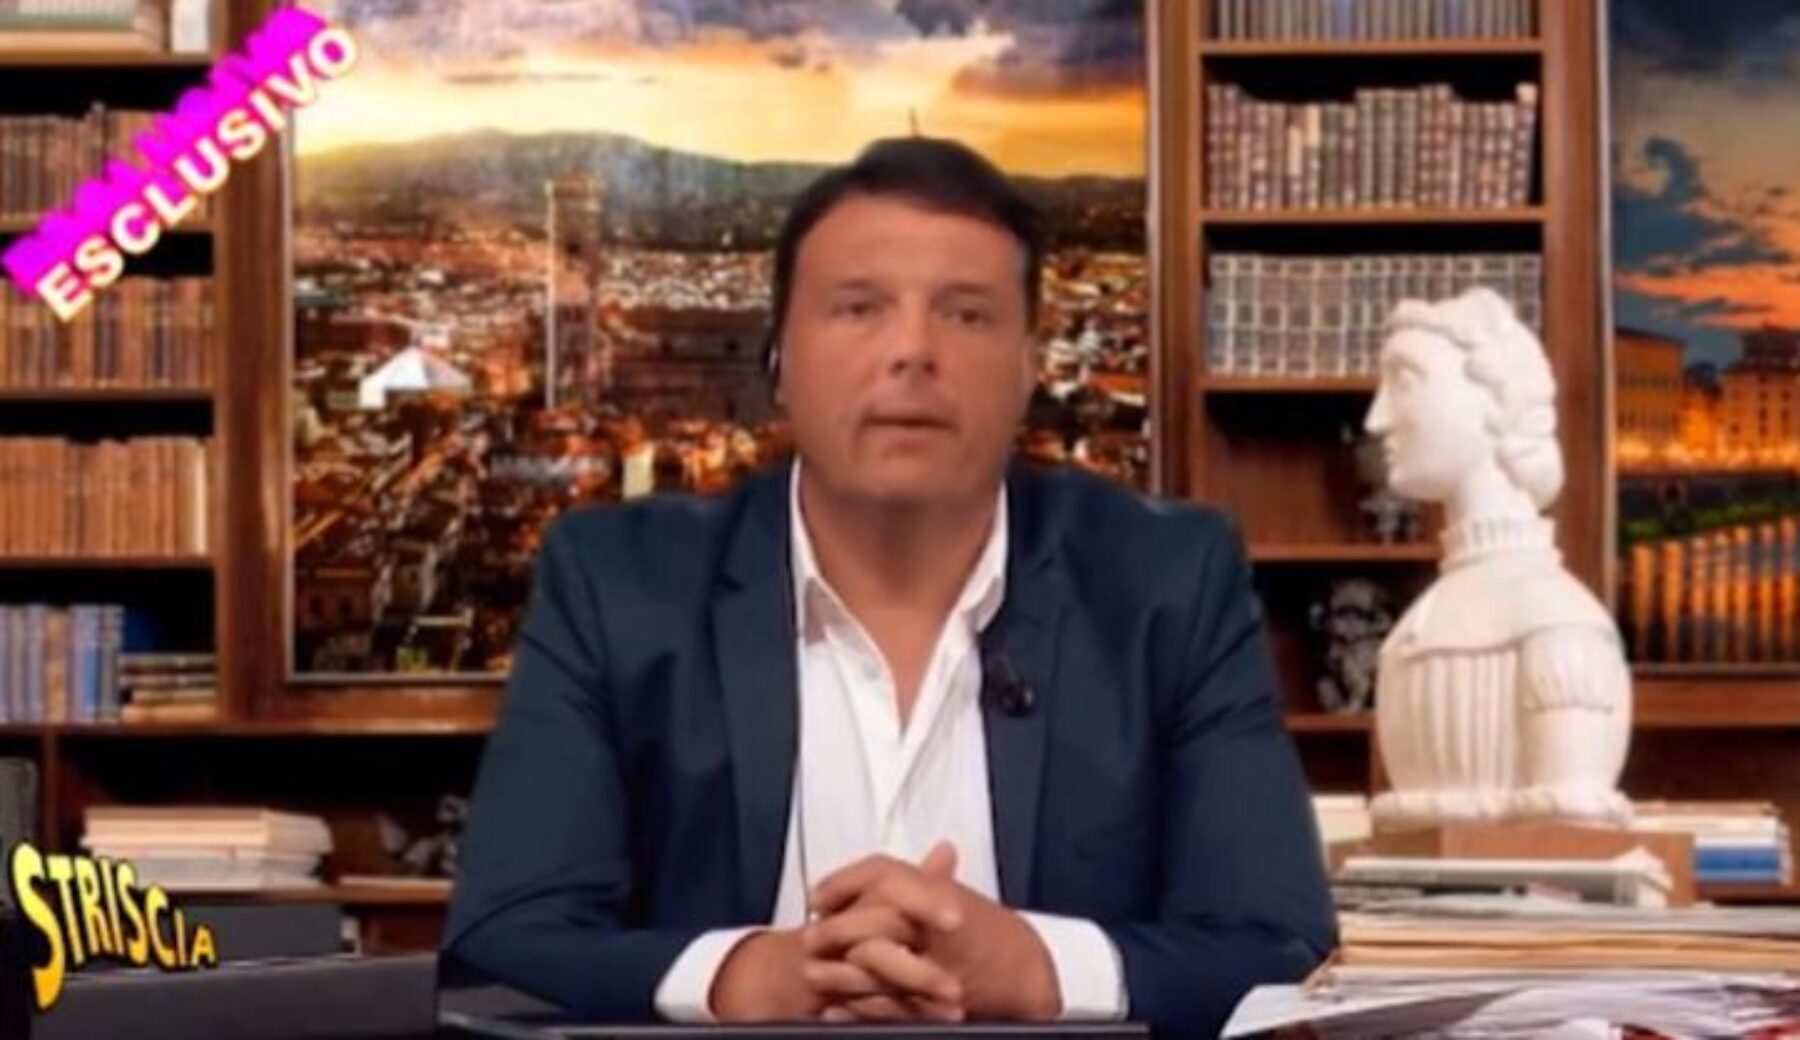 La nostra precisazione sul video del finto Renzi inviata al quotidiano la Stampa